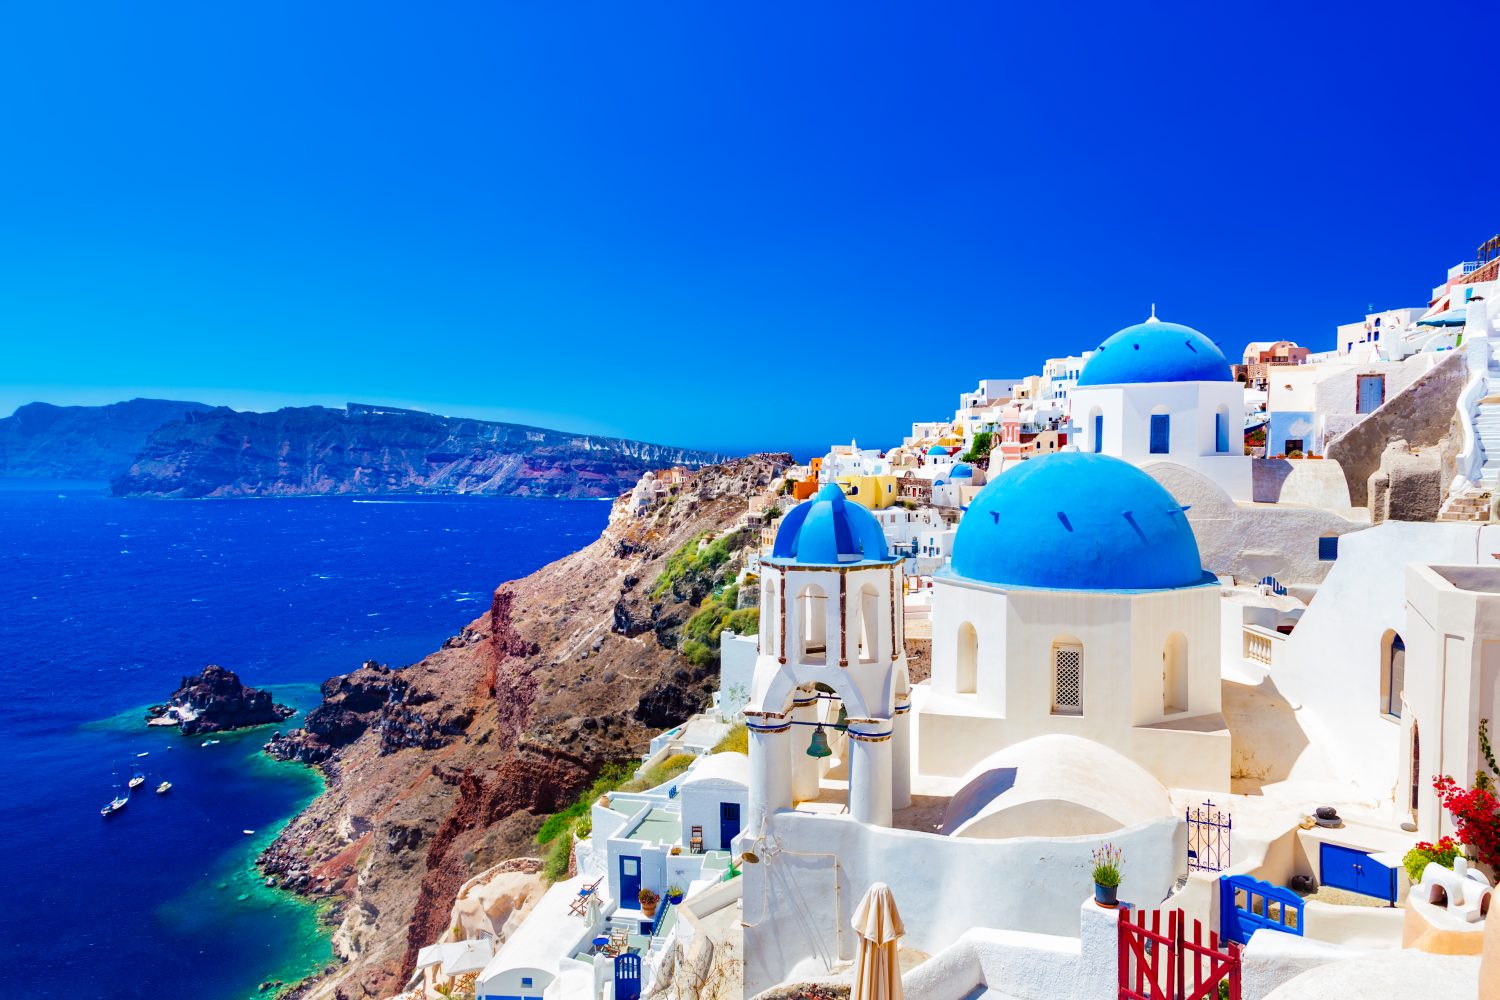 Grieks dorpje met witte huizen en blauwe daken